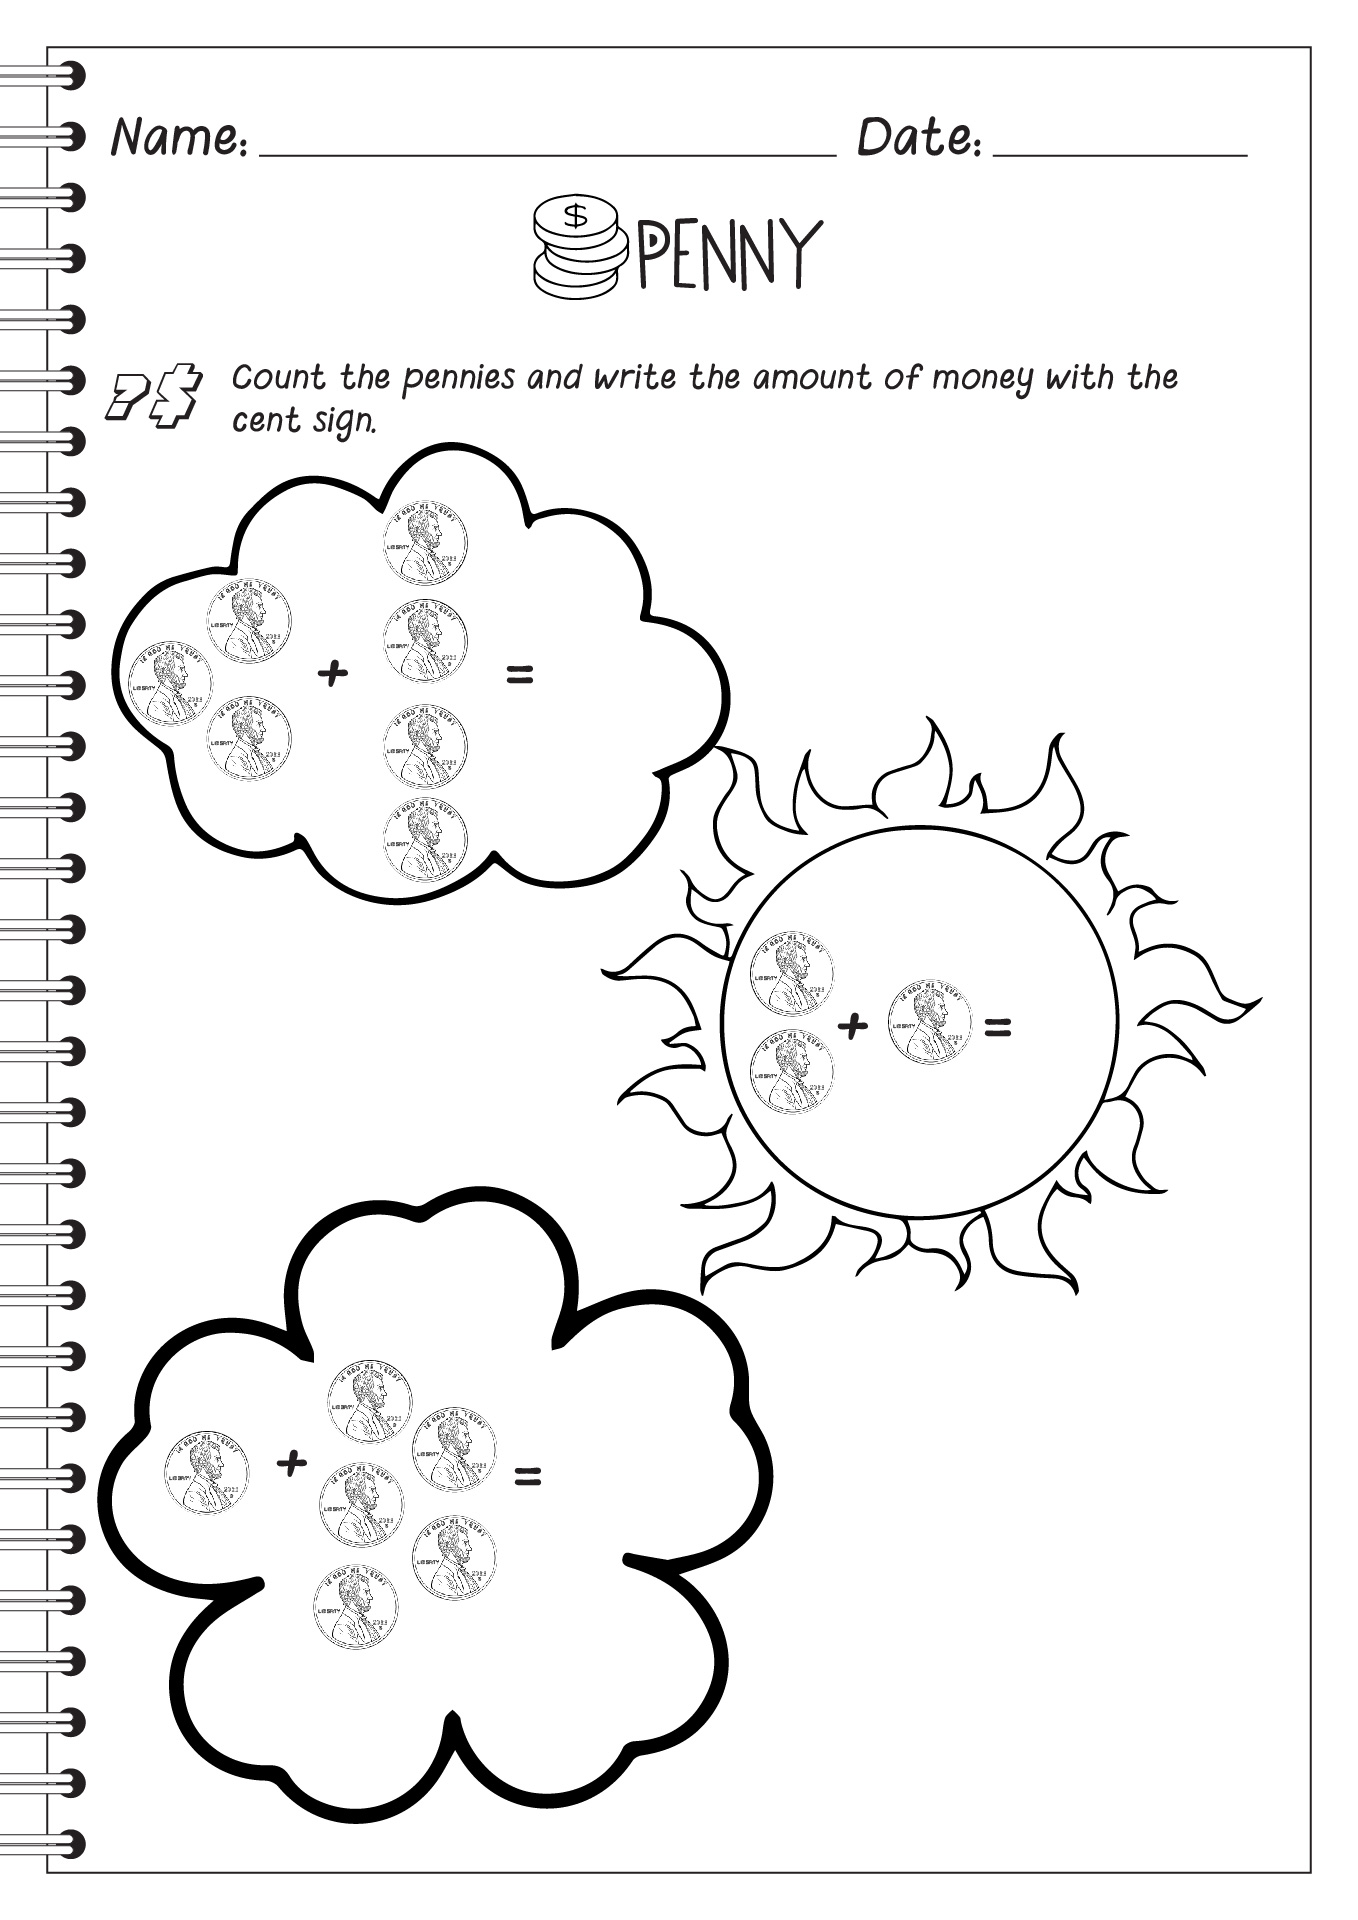 penny-worksheets-for-kindergarten-printable-kindergarten-worksheets